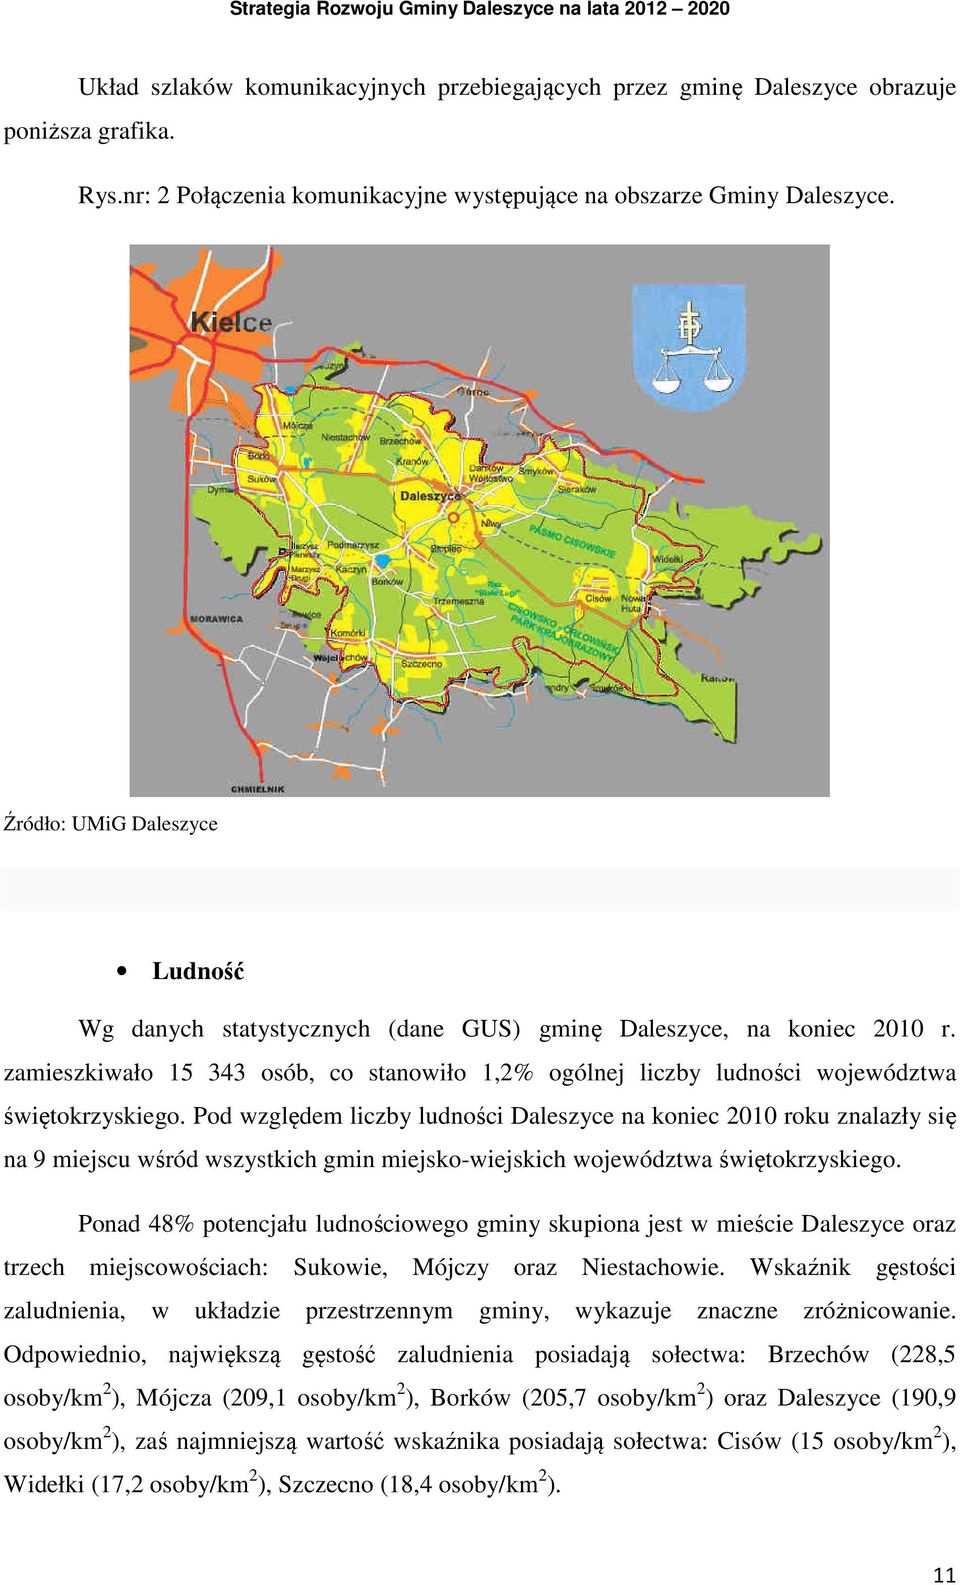 Pod względem liczby ludności Daleszyce na koniec 2010 roku znalazły się na 9 miejscu wśród wszystkich gmin miejsko-wiejskich województwa świętokrzyskiego.